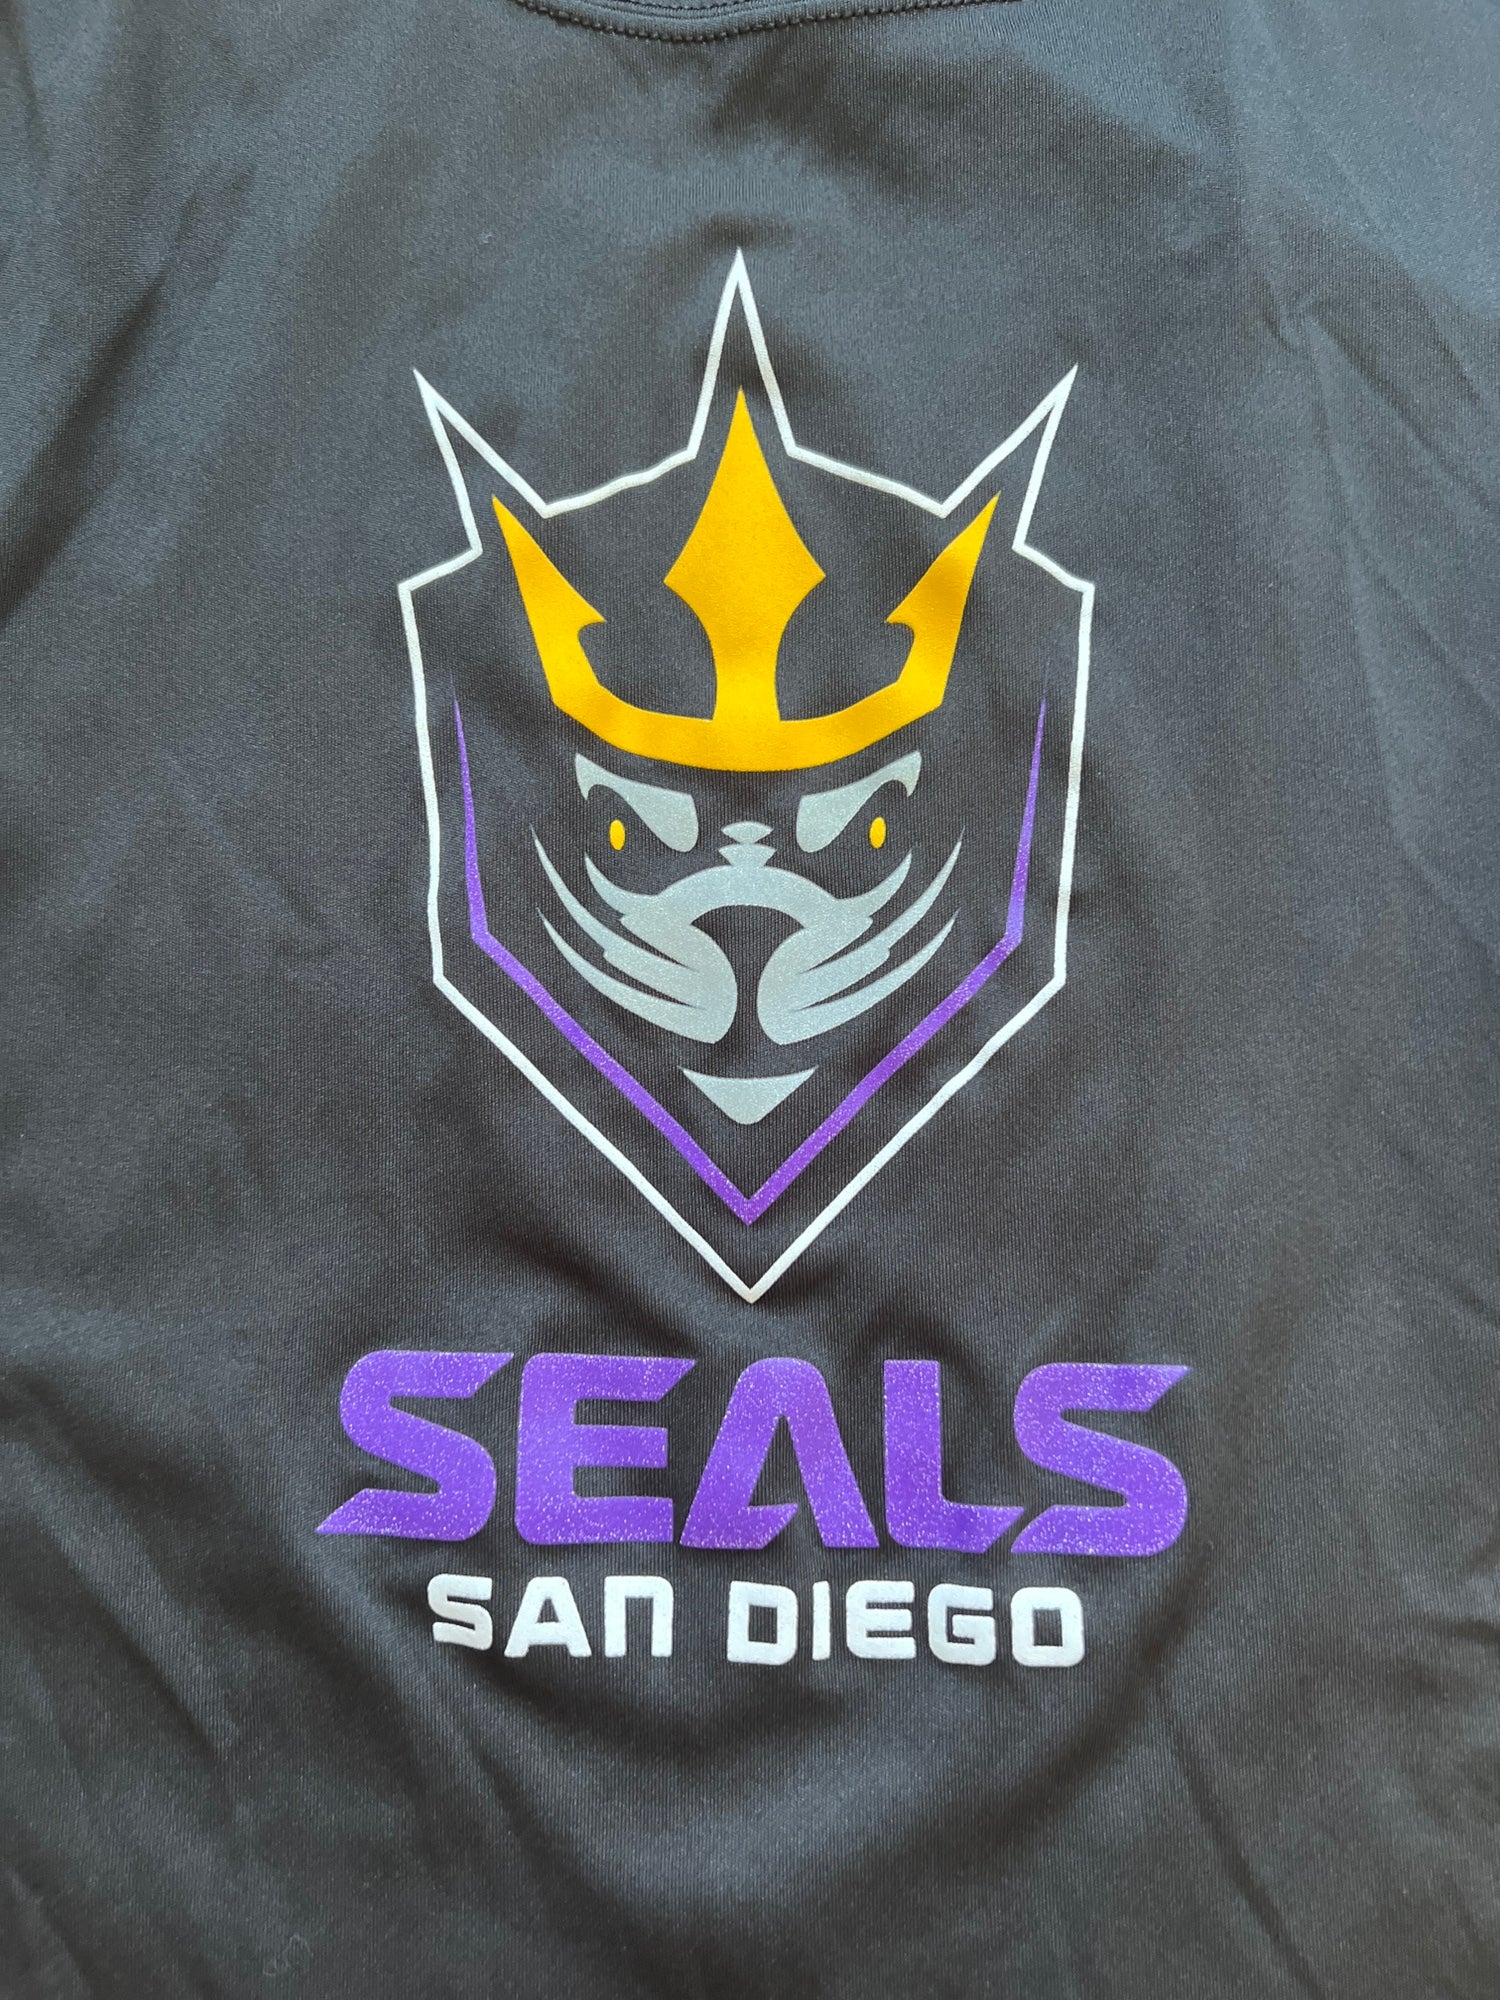 San Diego Seals Gear, Seals Jerseys, Store, Pro Shop, Apparel